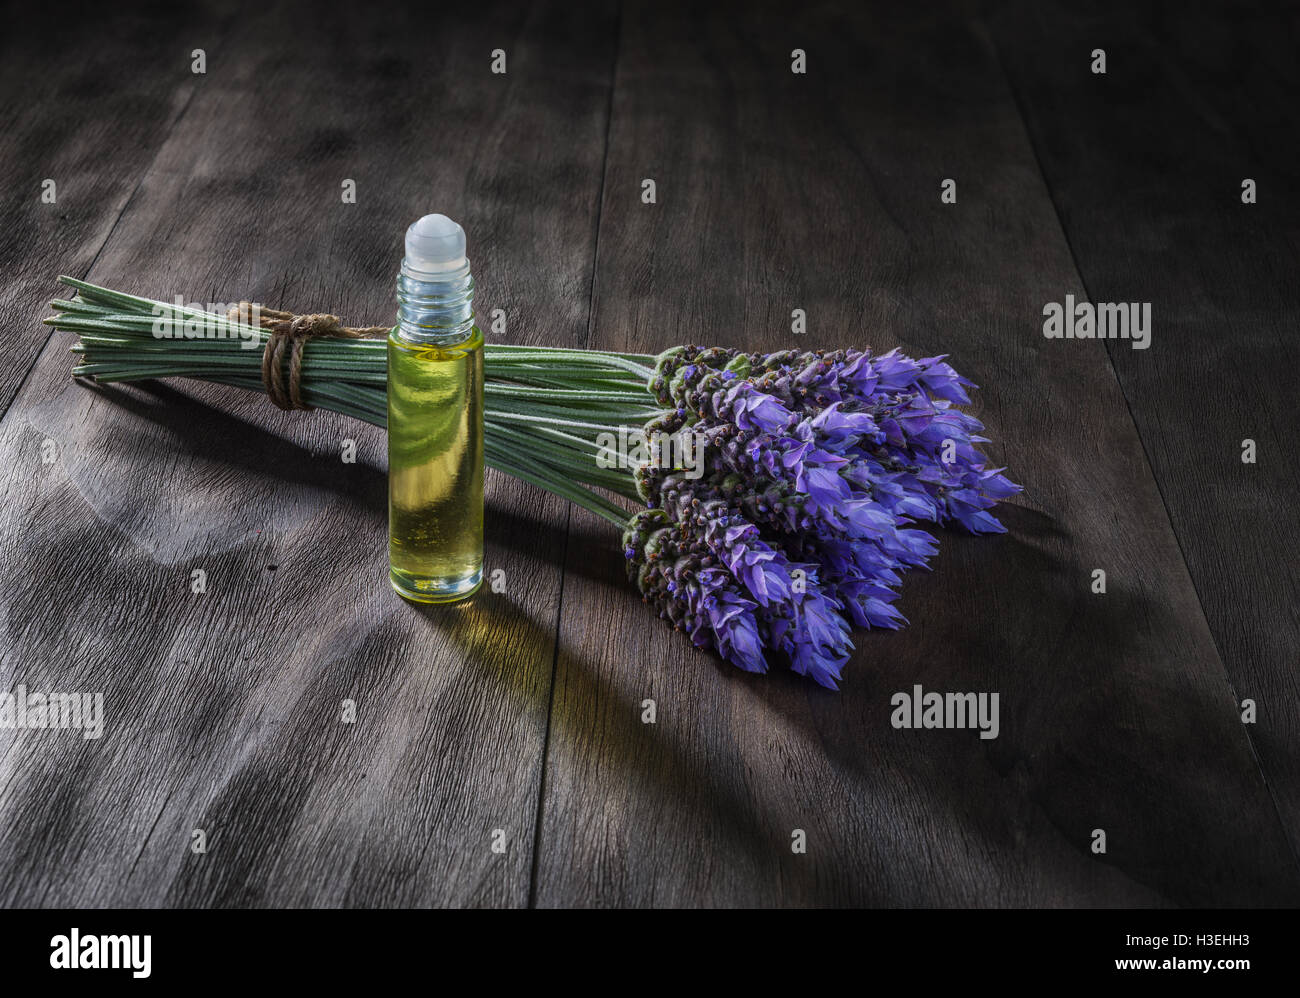 frische Lavendelblüten und ätherische Öle als natürliche Aromatherapie für Kopfschmerzen und Migräne Relief auf alten hölzernen Hintergrund Stockfoto